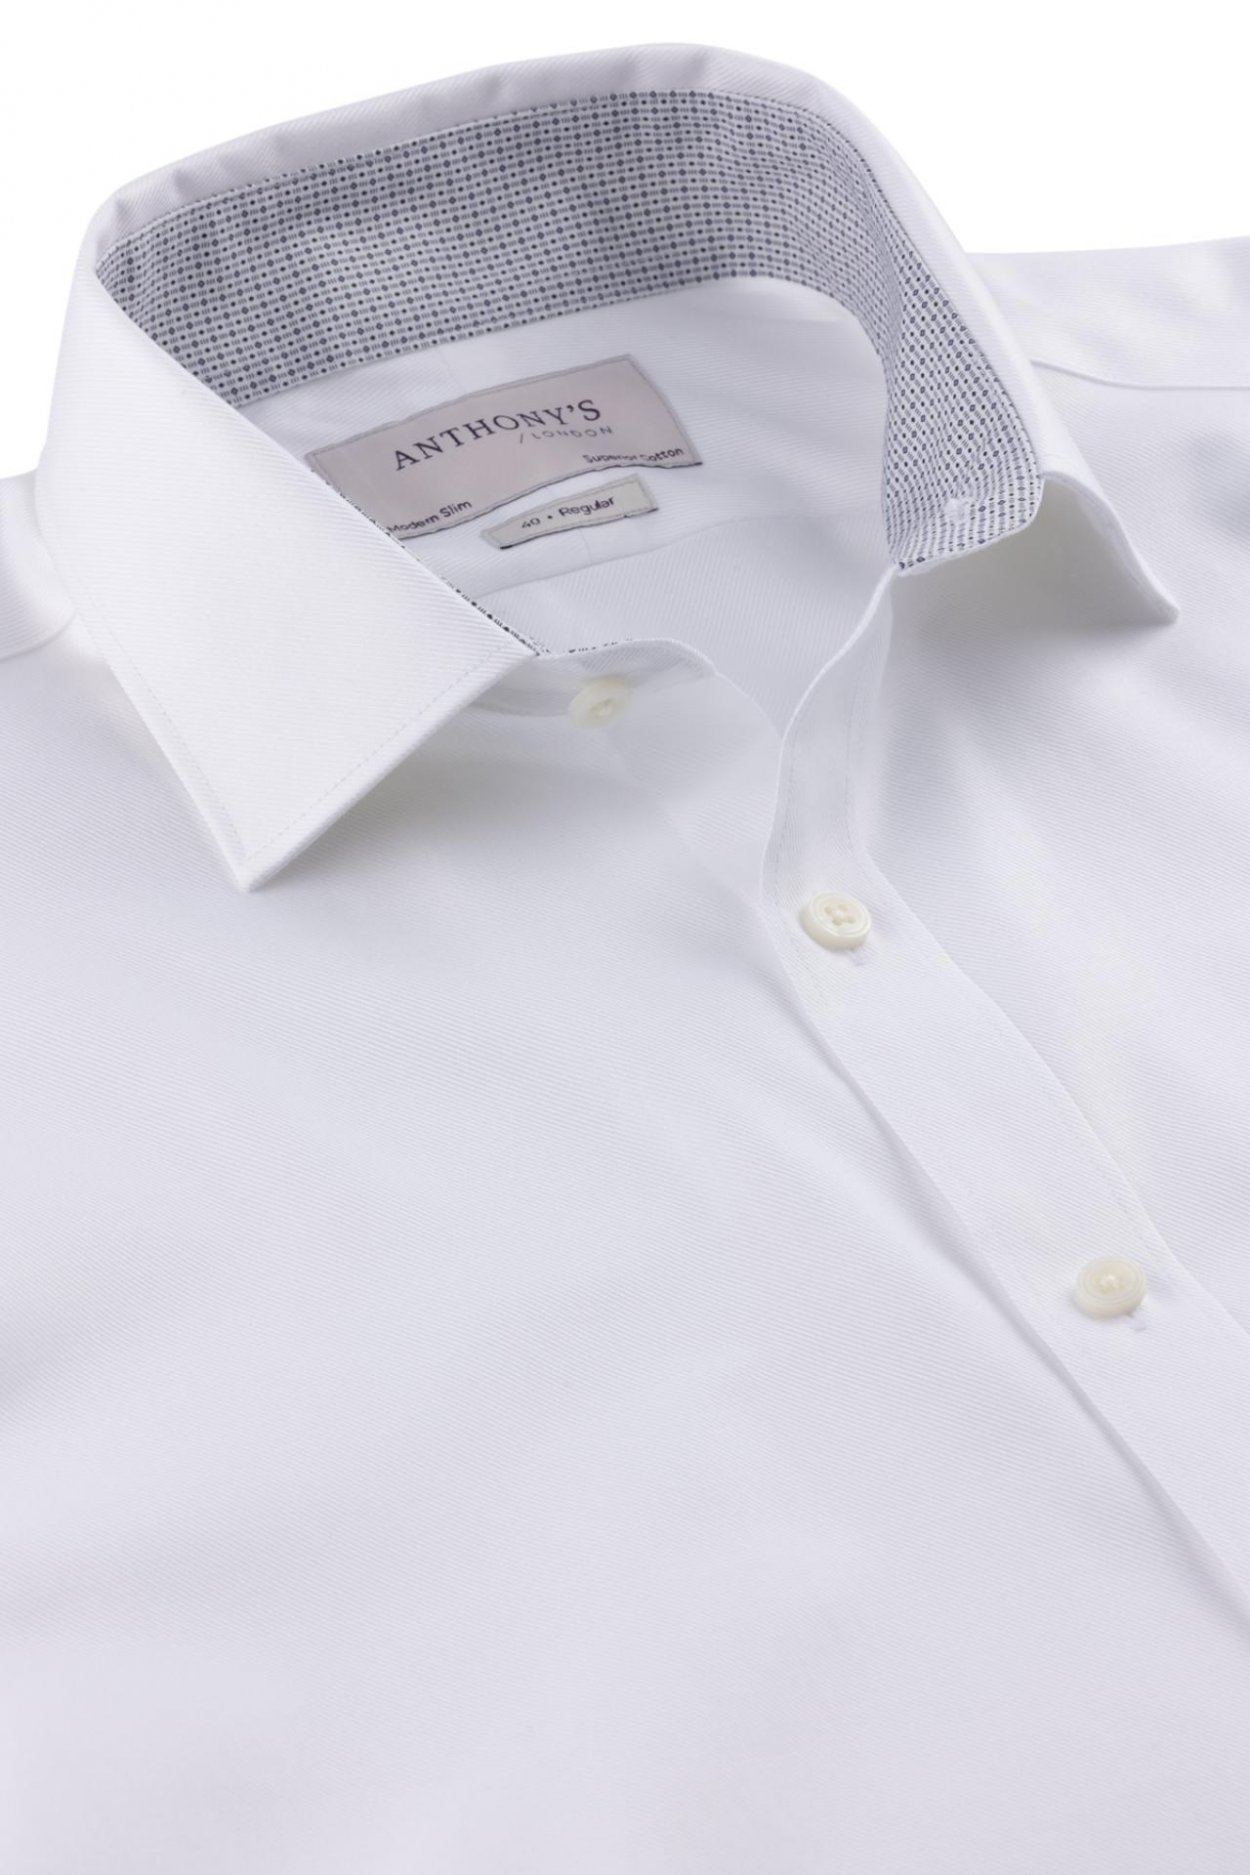 Pánská bílá košile s modrým detailem